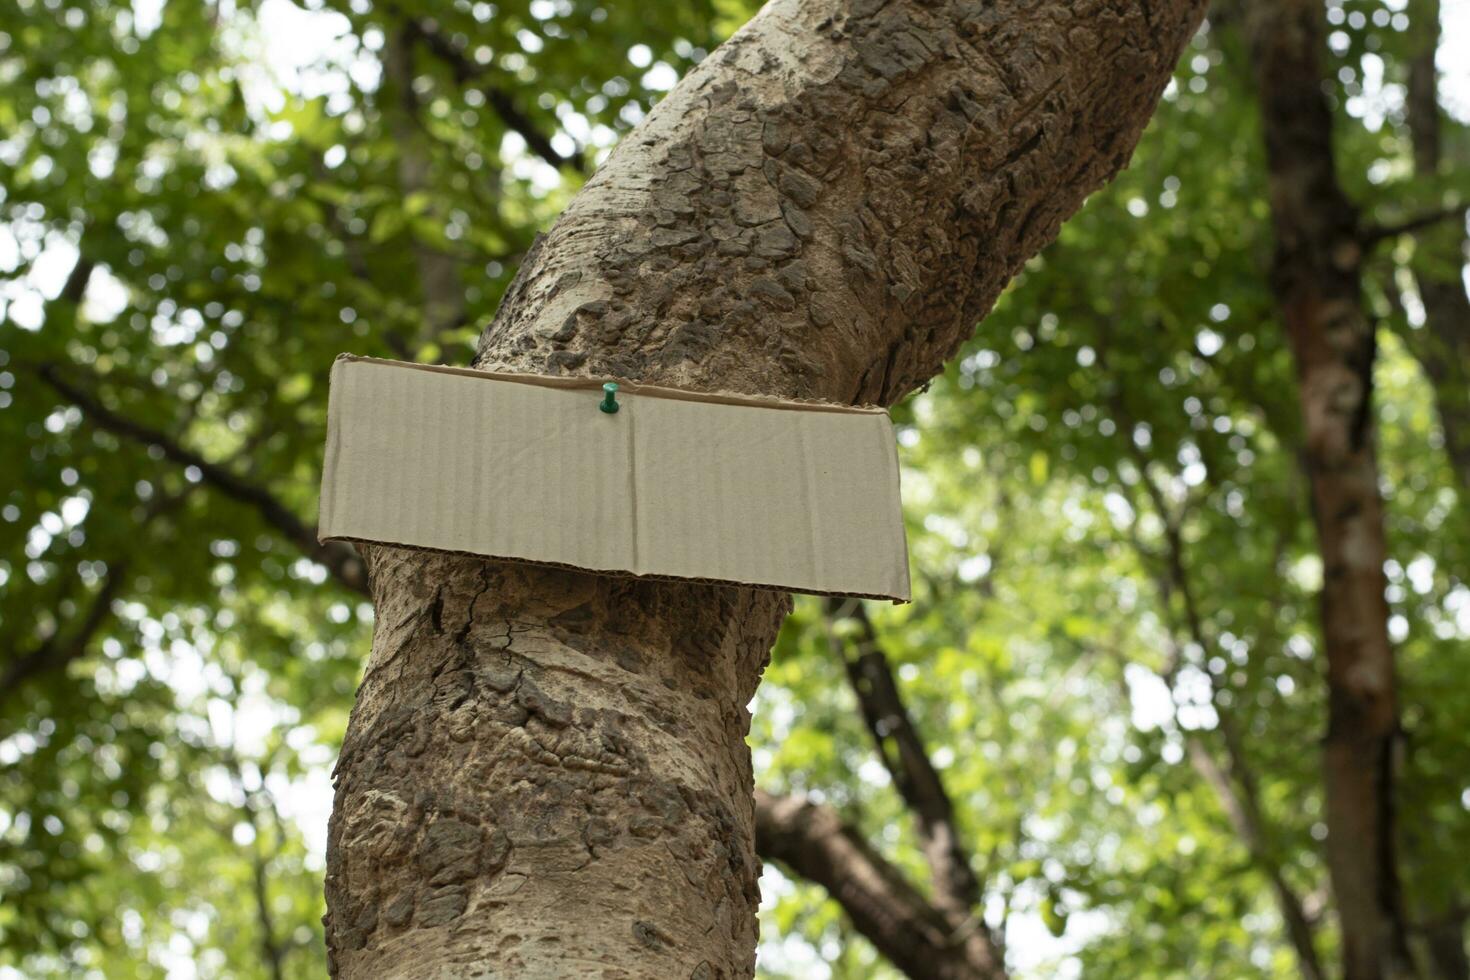 arbre tronc lequel a Vide papier carton collé sur le aboyer, concept pour environnement étude, la nature étude, appel en dehors tout gens à le respect environnement et joindre monde environnement journée campagne. photo